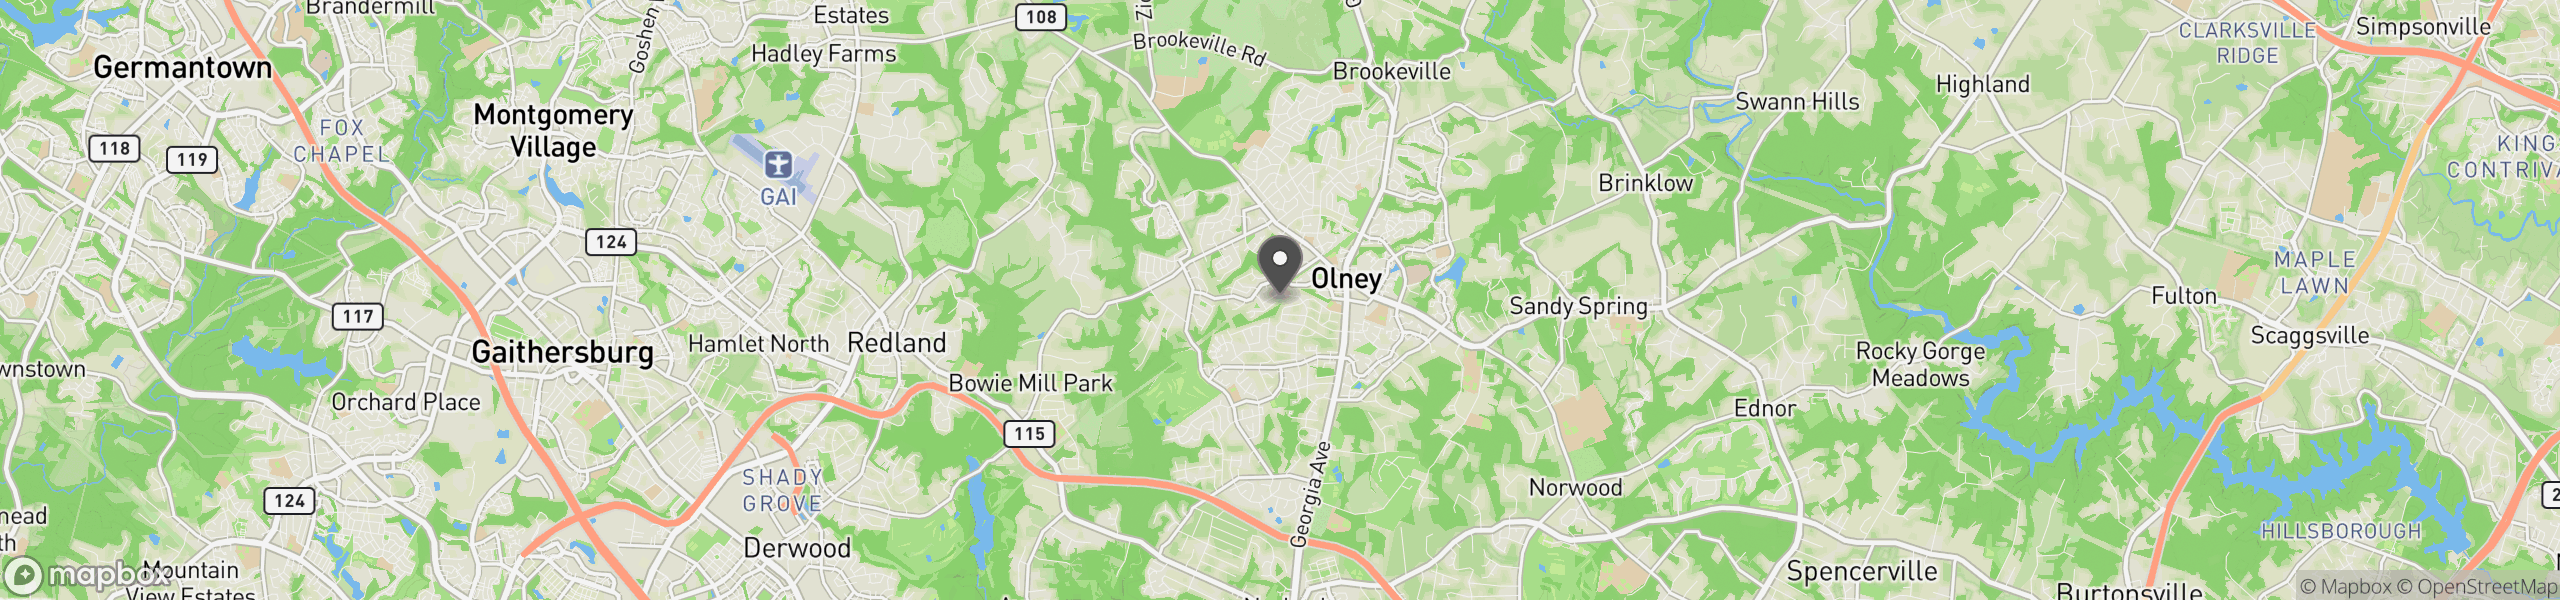 Olney, MD